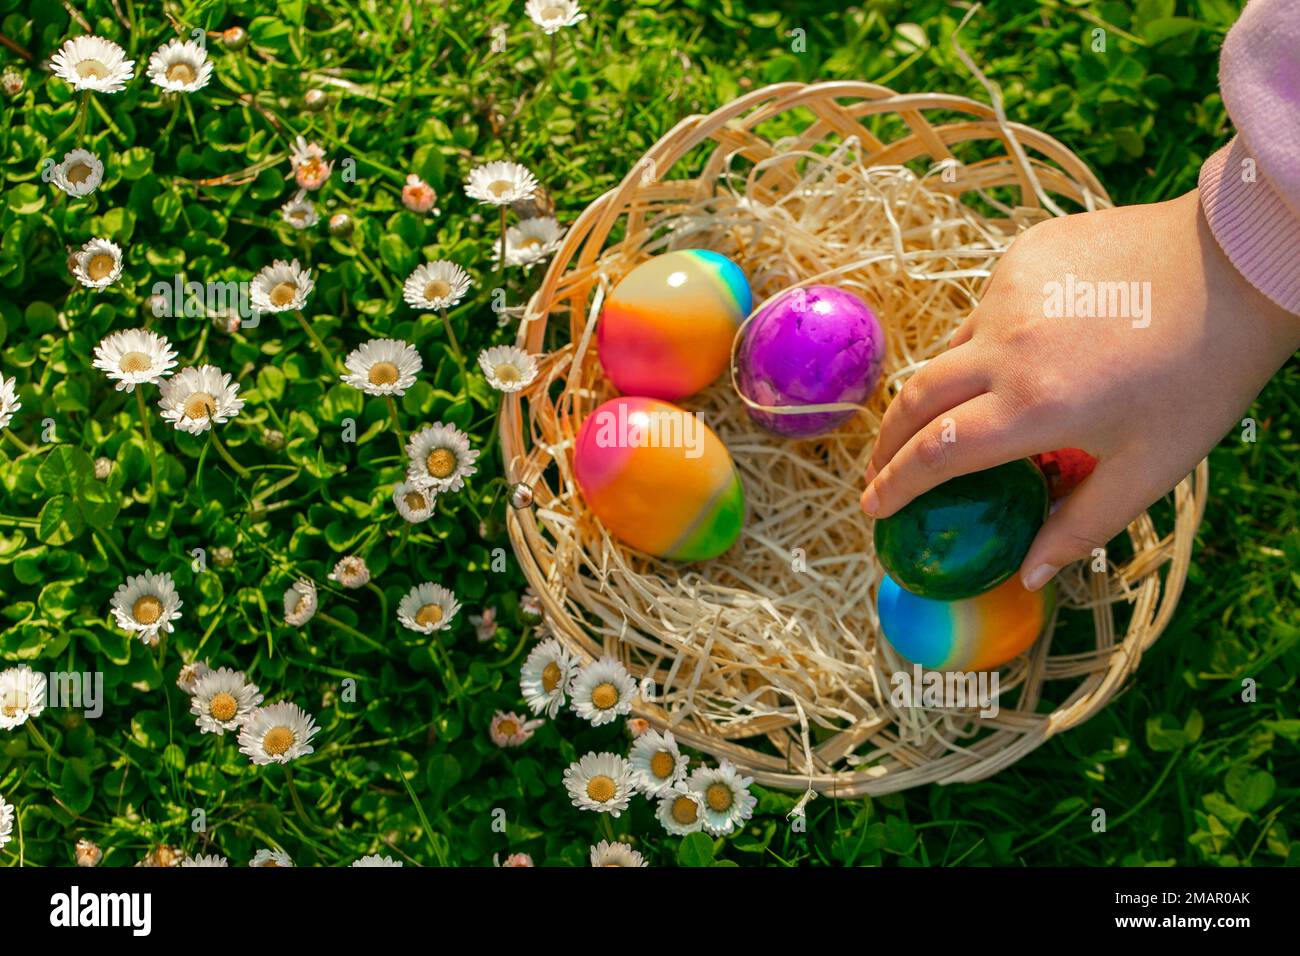 L'uovo di Pasqua Hunt.child raccoglie le uova colorate in un prato primaverile con margherite.Pasqua vacanza tradizione.Primavera festa religiosa. Foto Stock